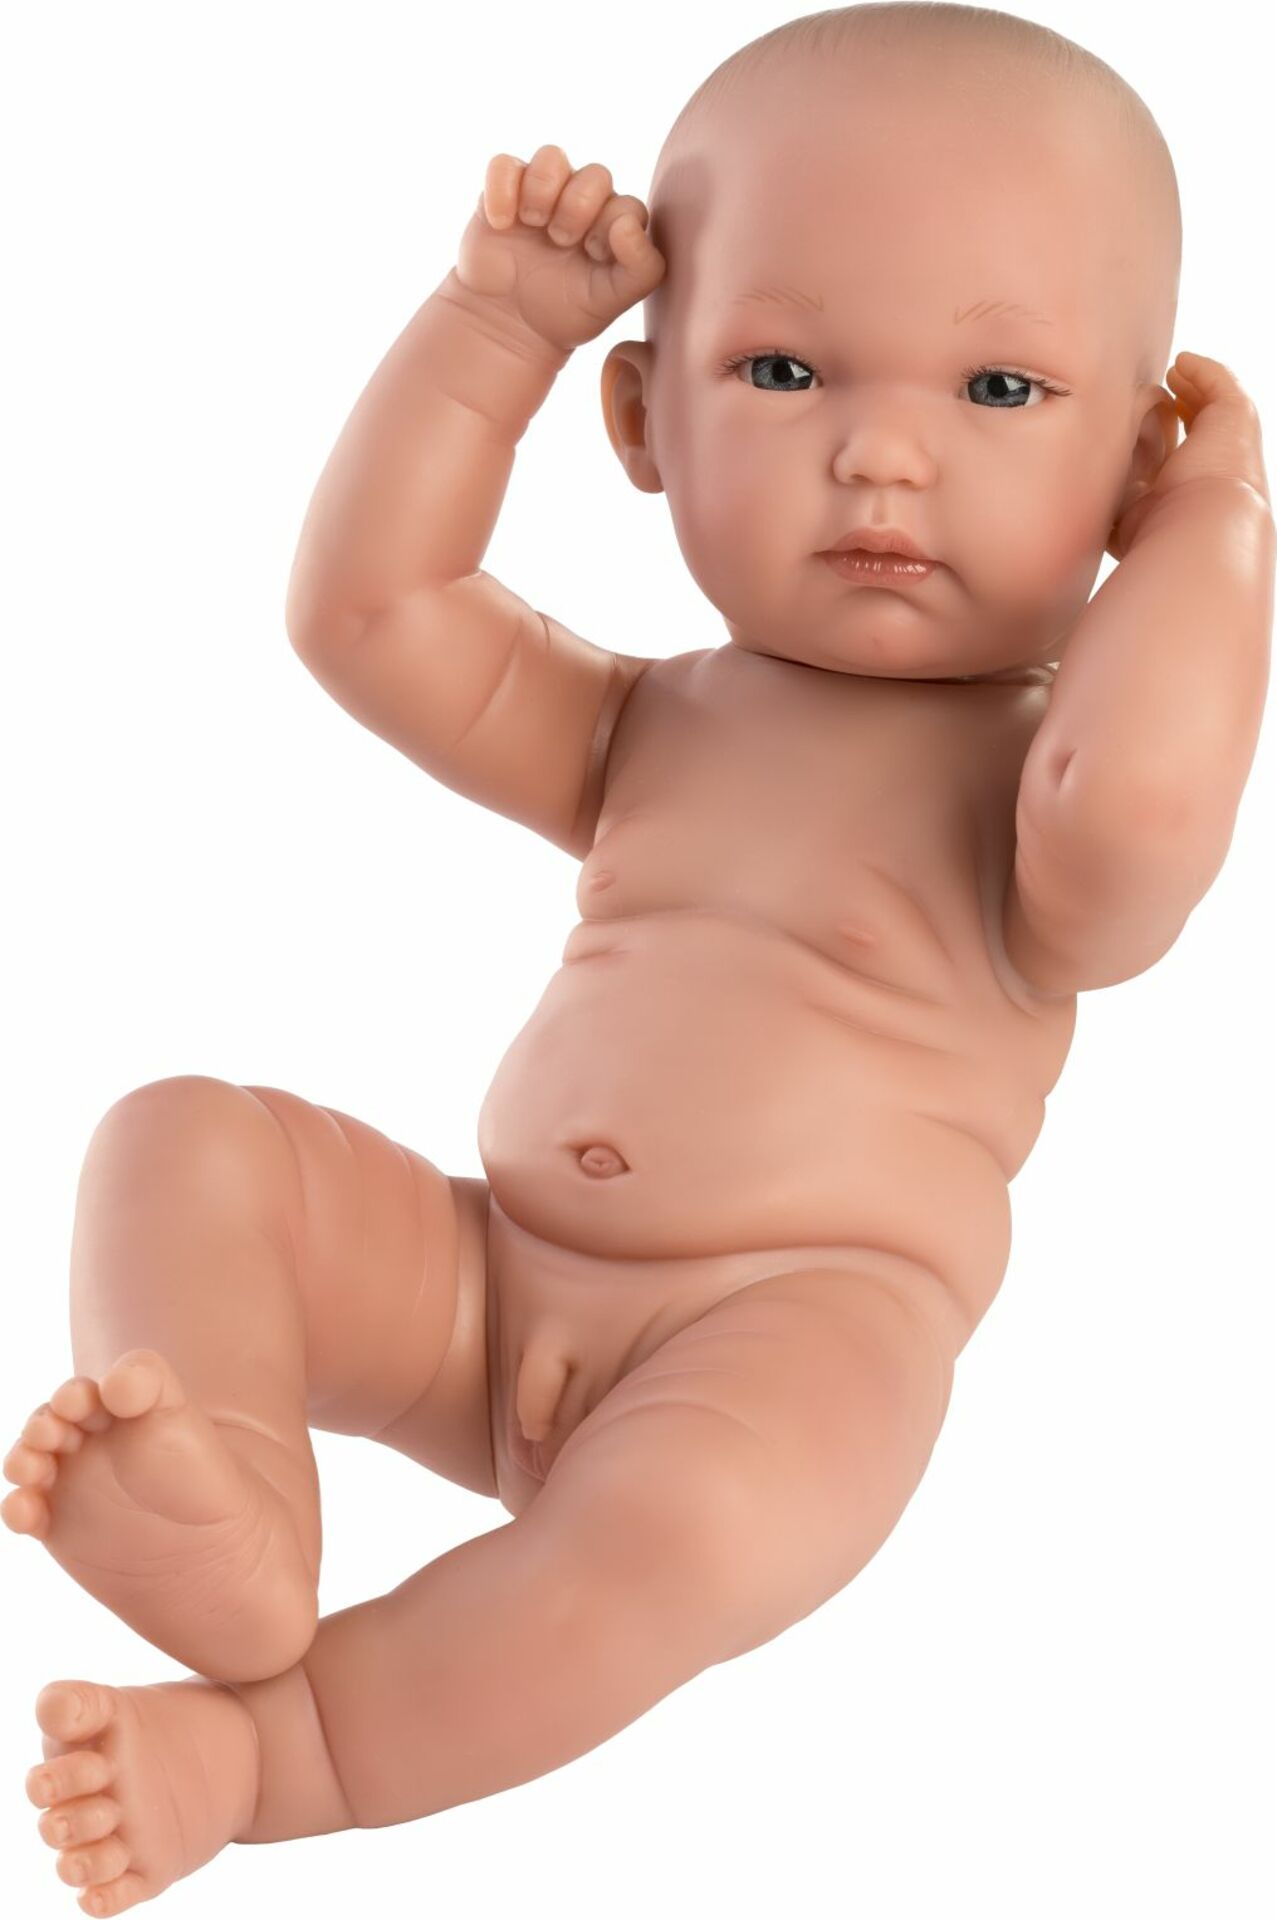 Llorens 63501 NEW BORN CHLAPEK - realistické miminko s celovinylovým tělem - 35 cm